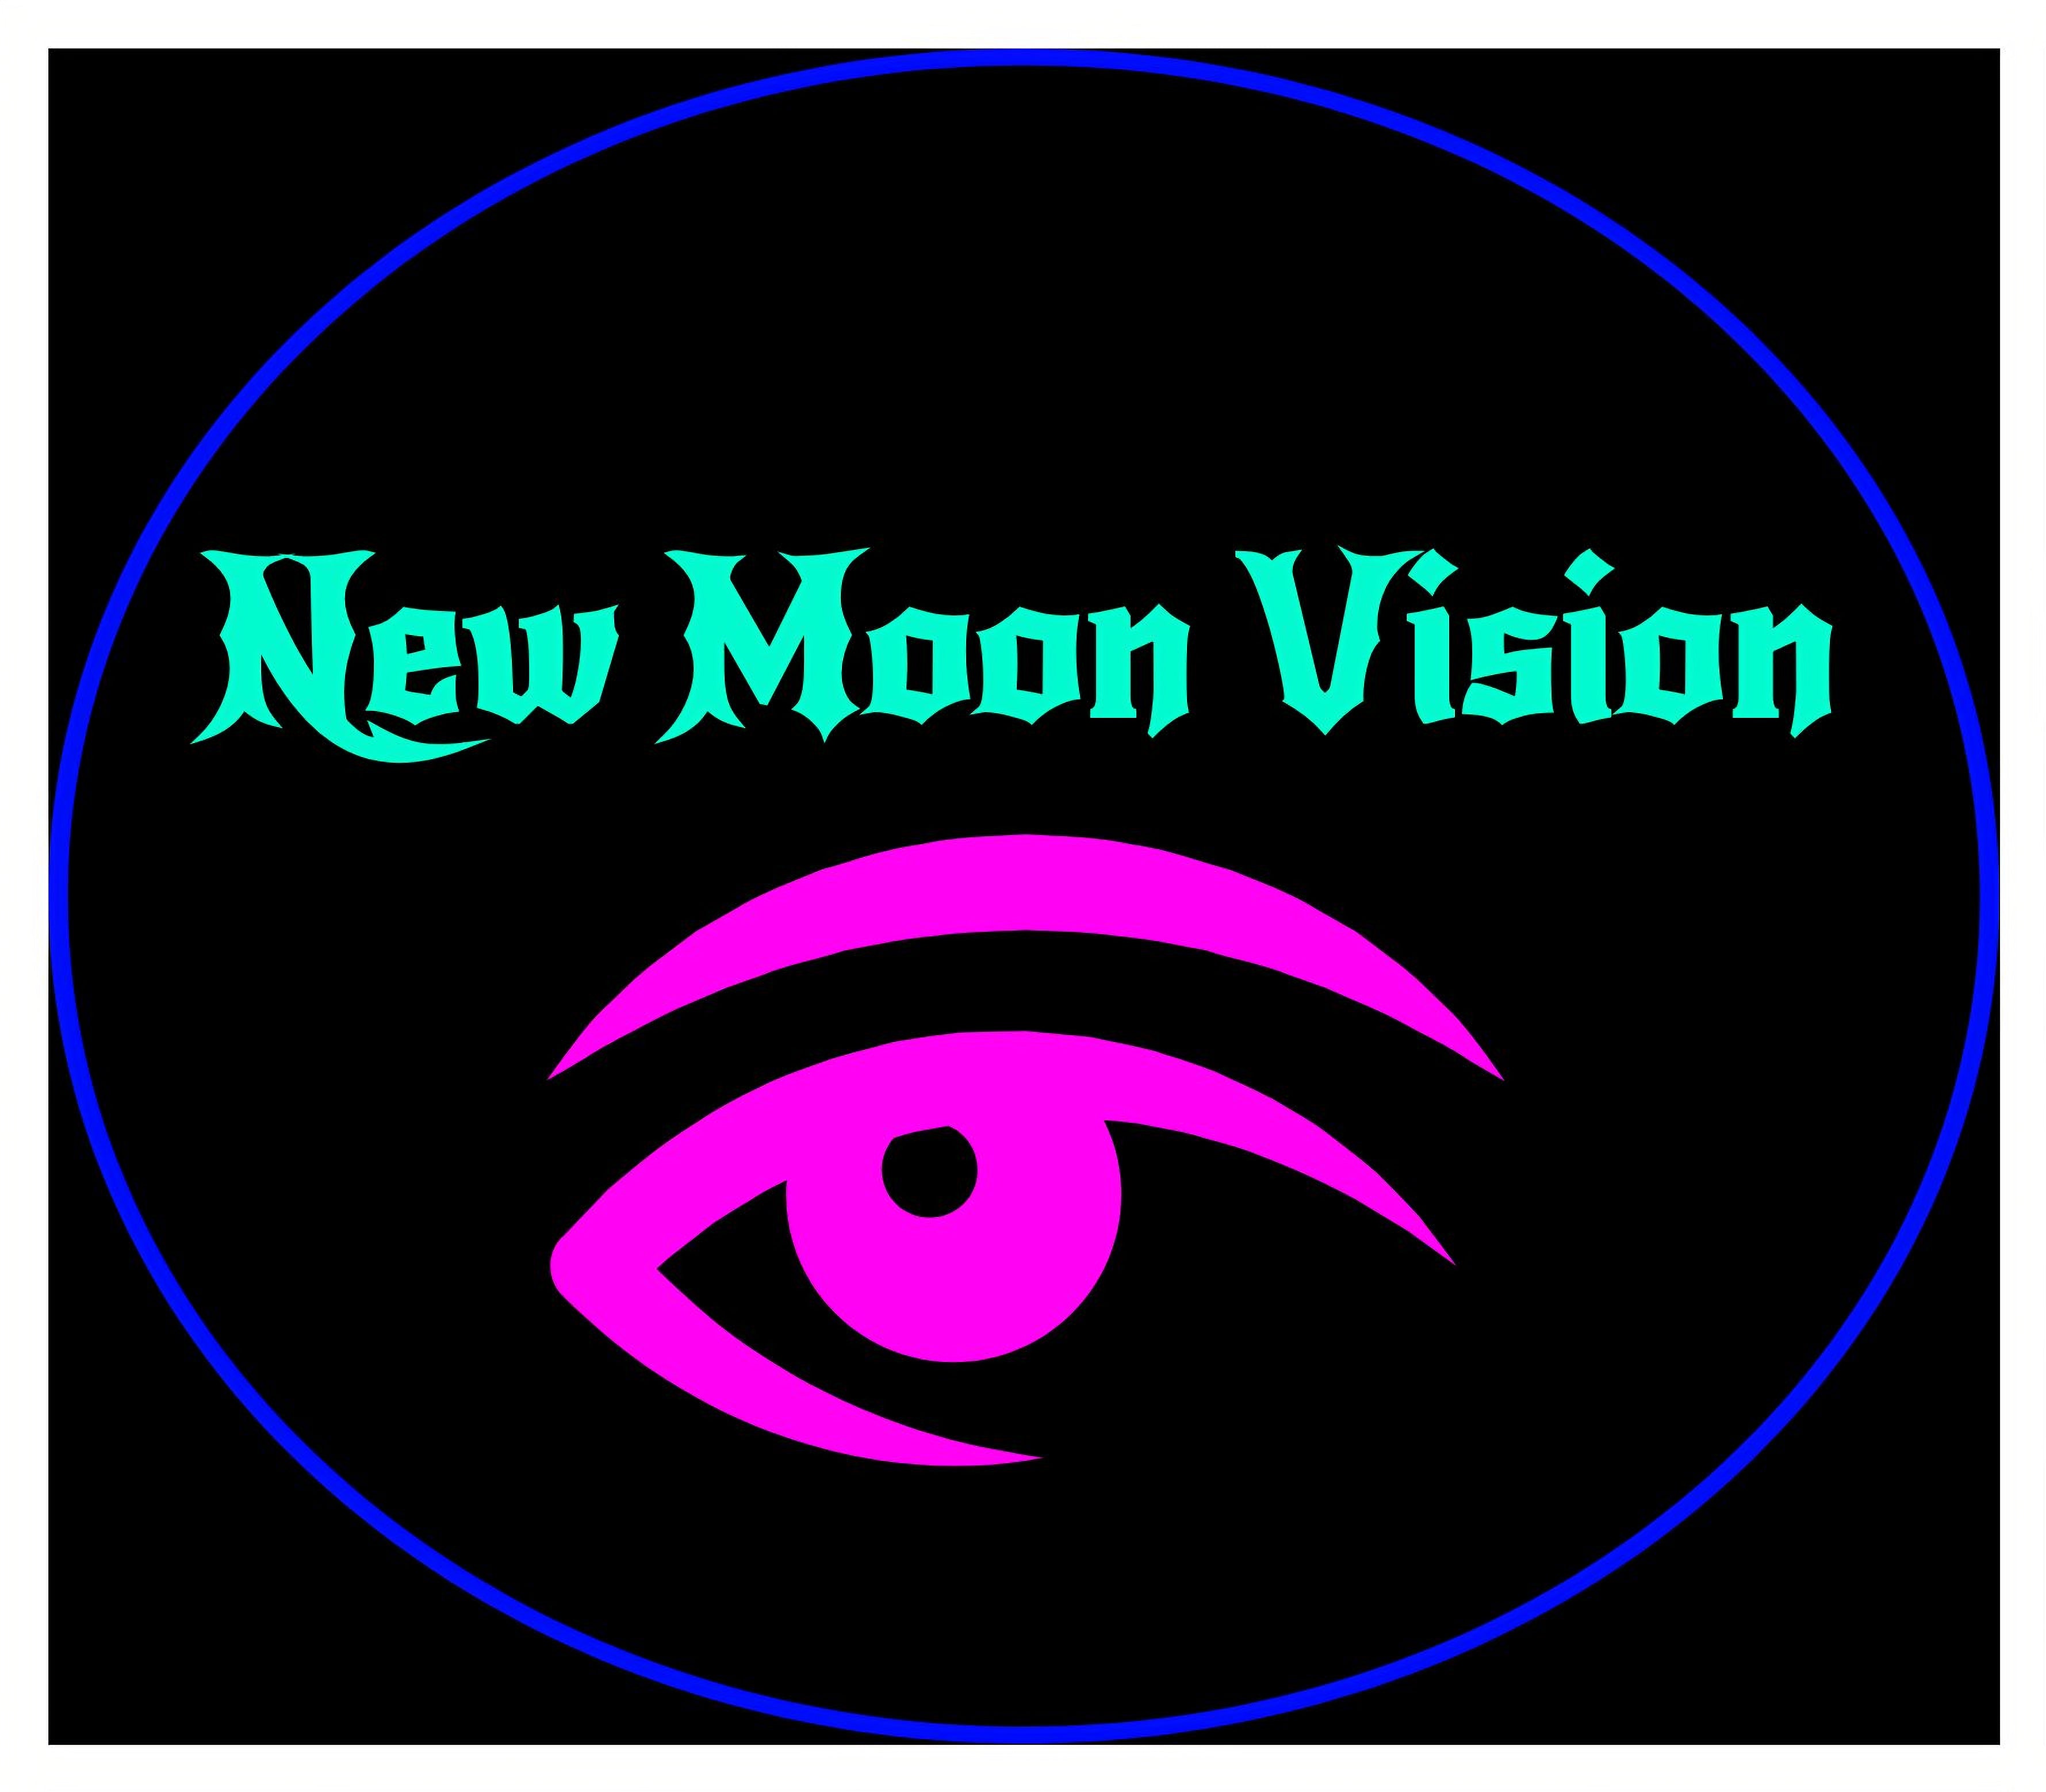 New Moon Vision